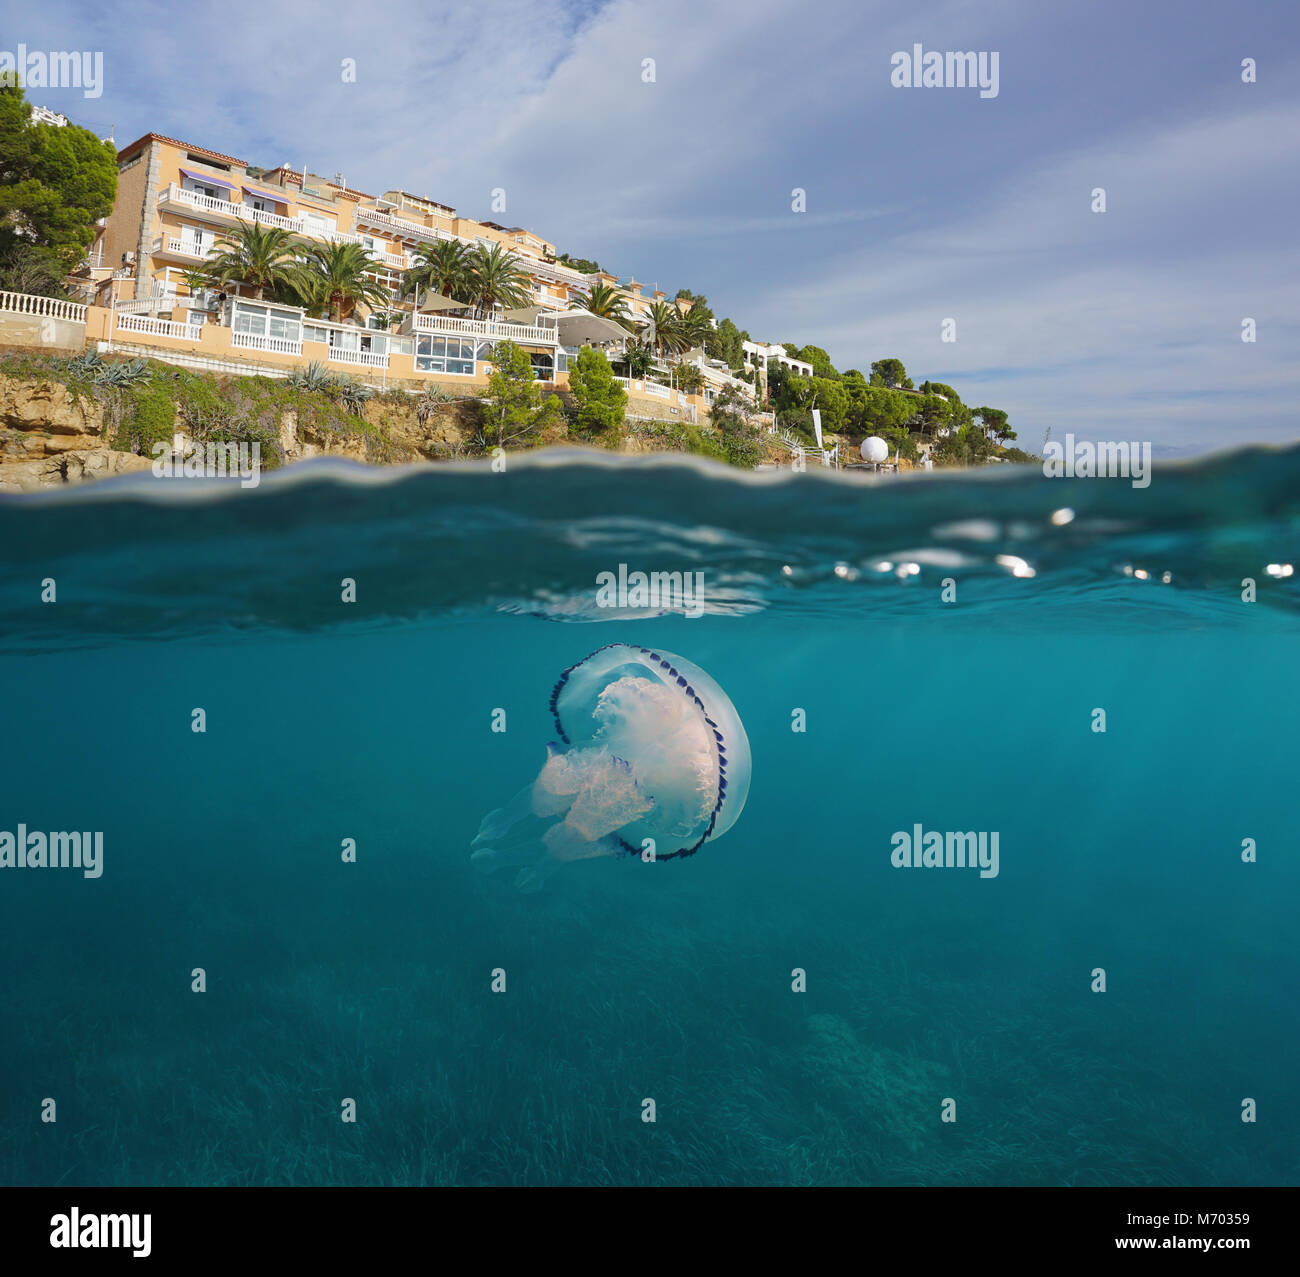 Hôtel sur la côte de la mer Méditerranéenne avec une méduse, fractionnée sous-marine au-dessus et au-dessous de la surface de l'eau, Espagne, Costa Brava, Catalogne Banque D'Images